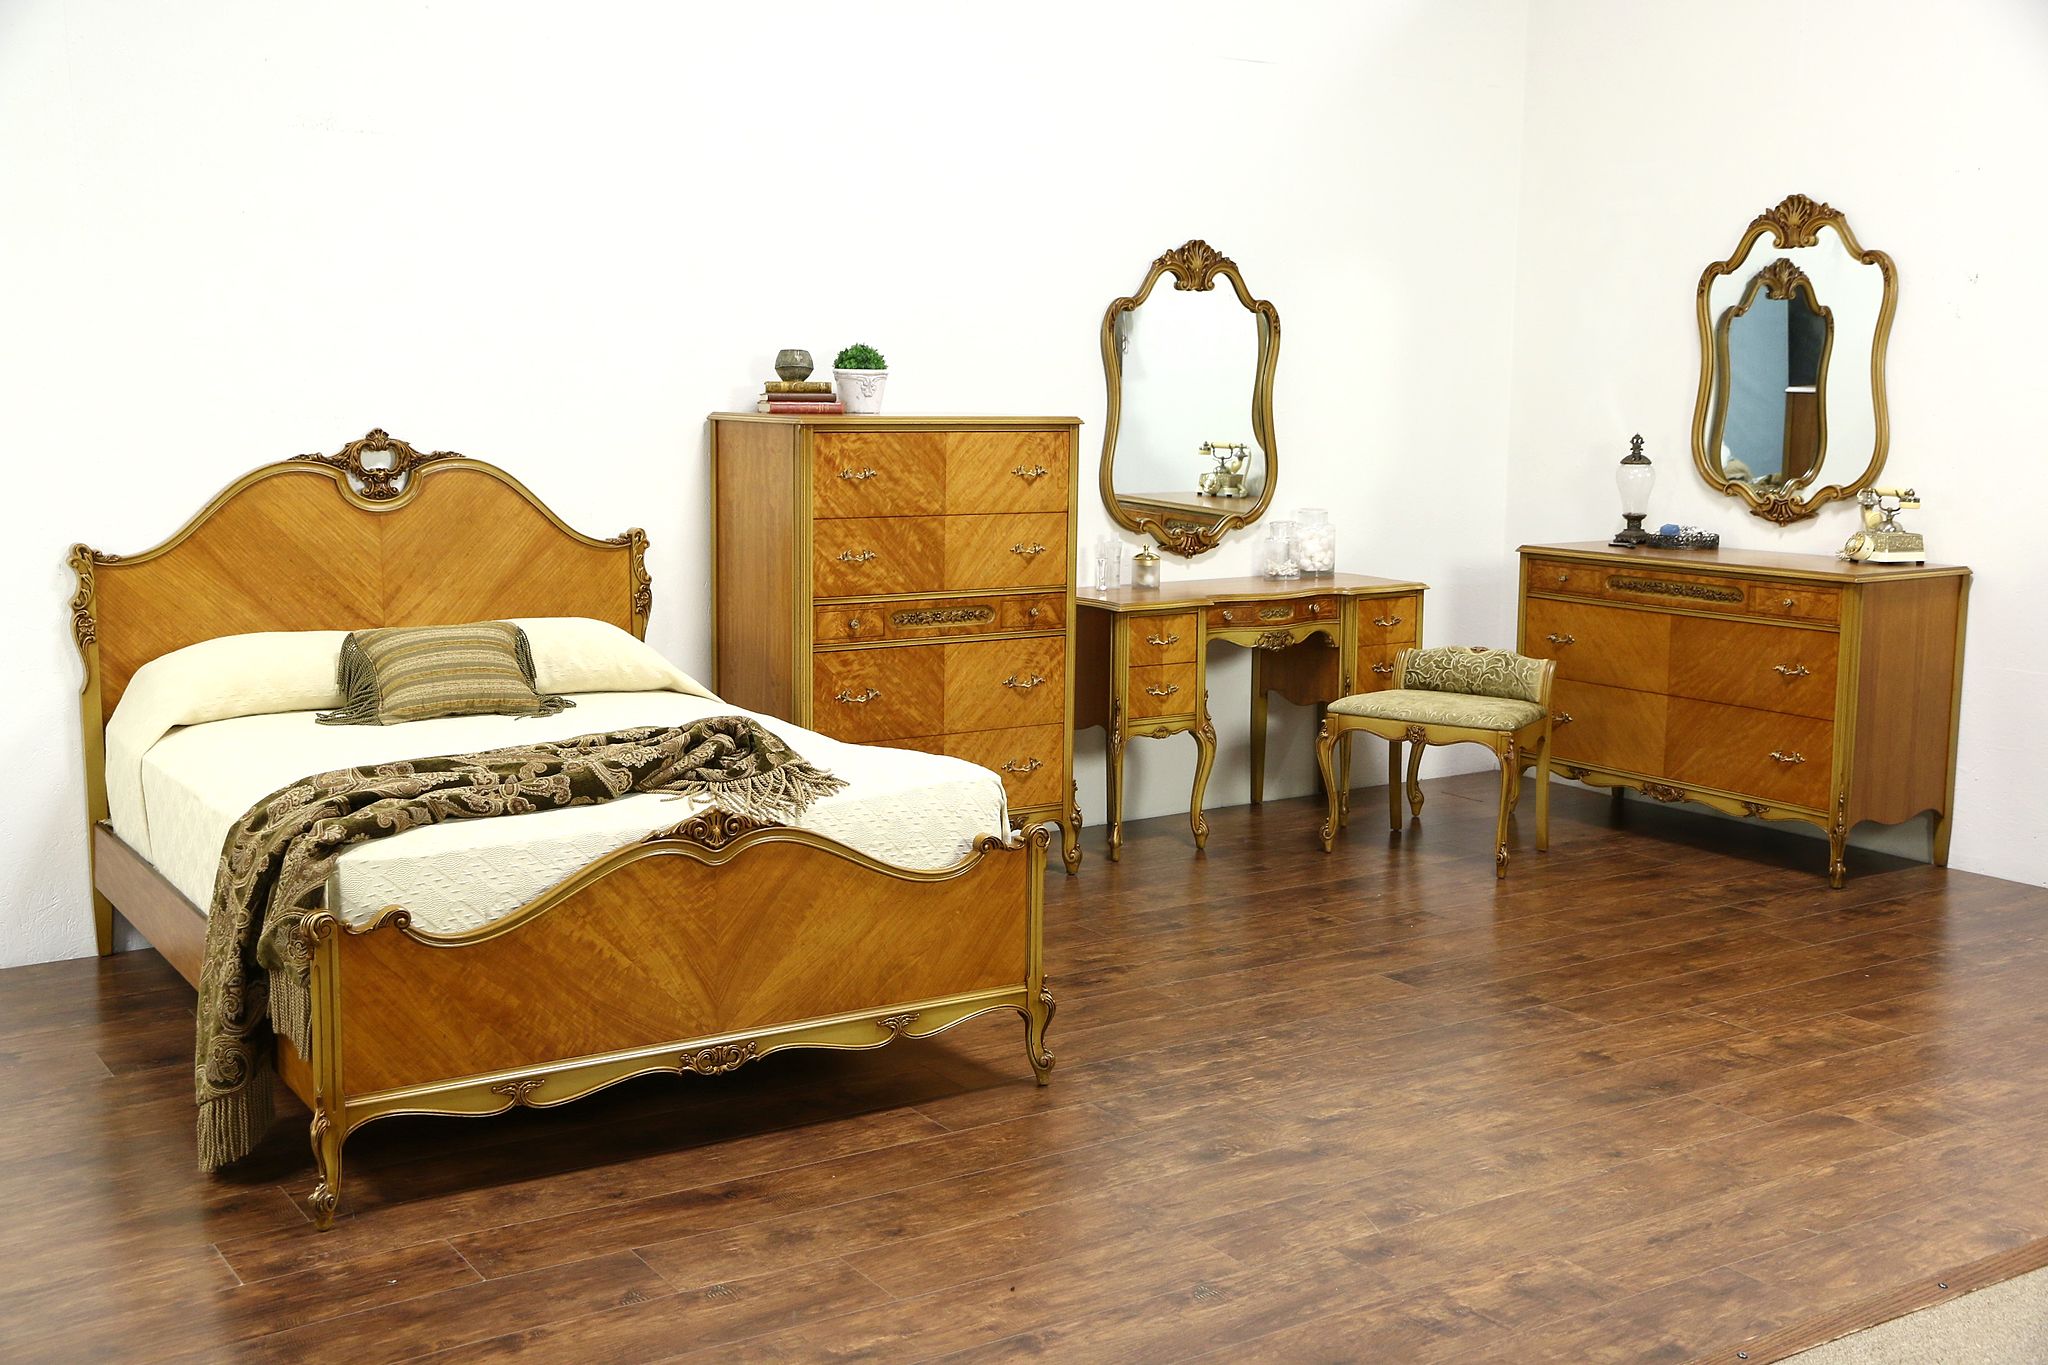 1940 bedroom furniture set